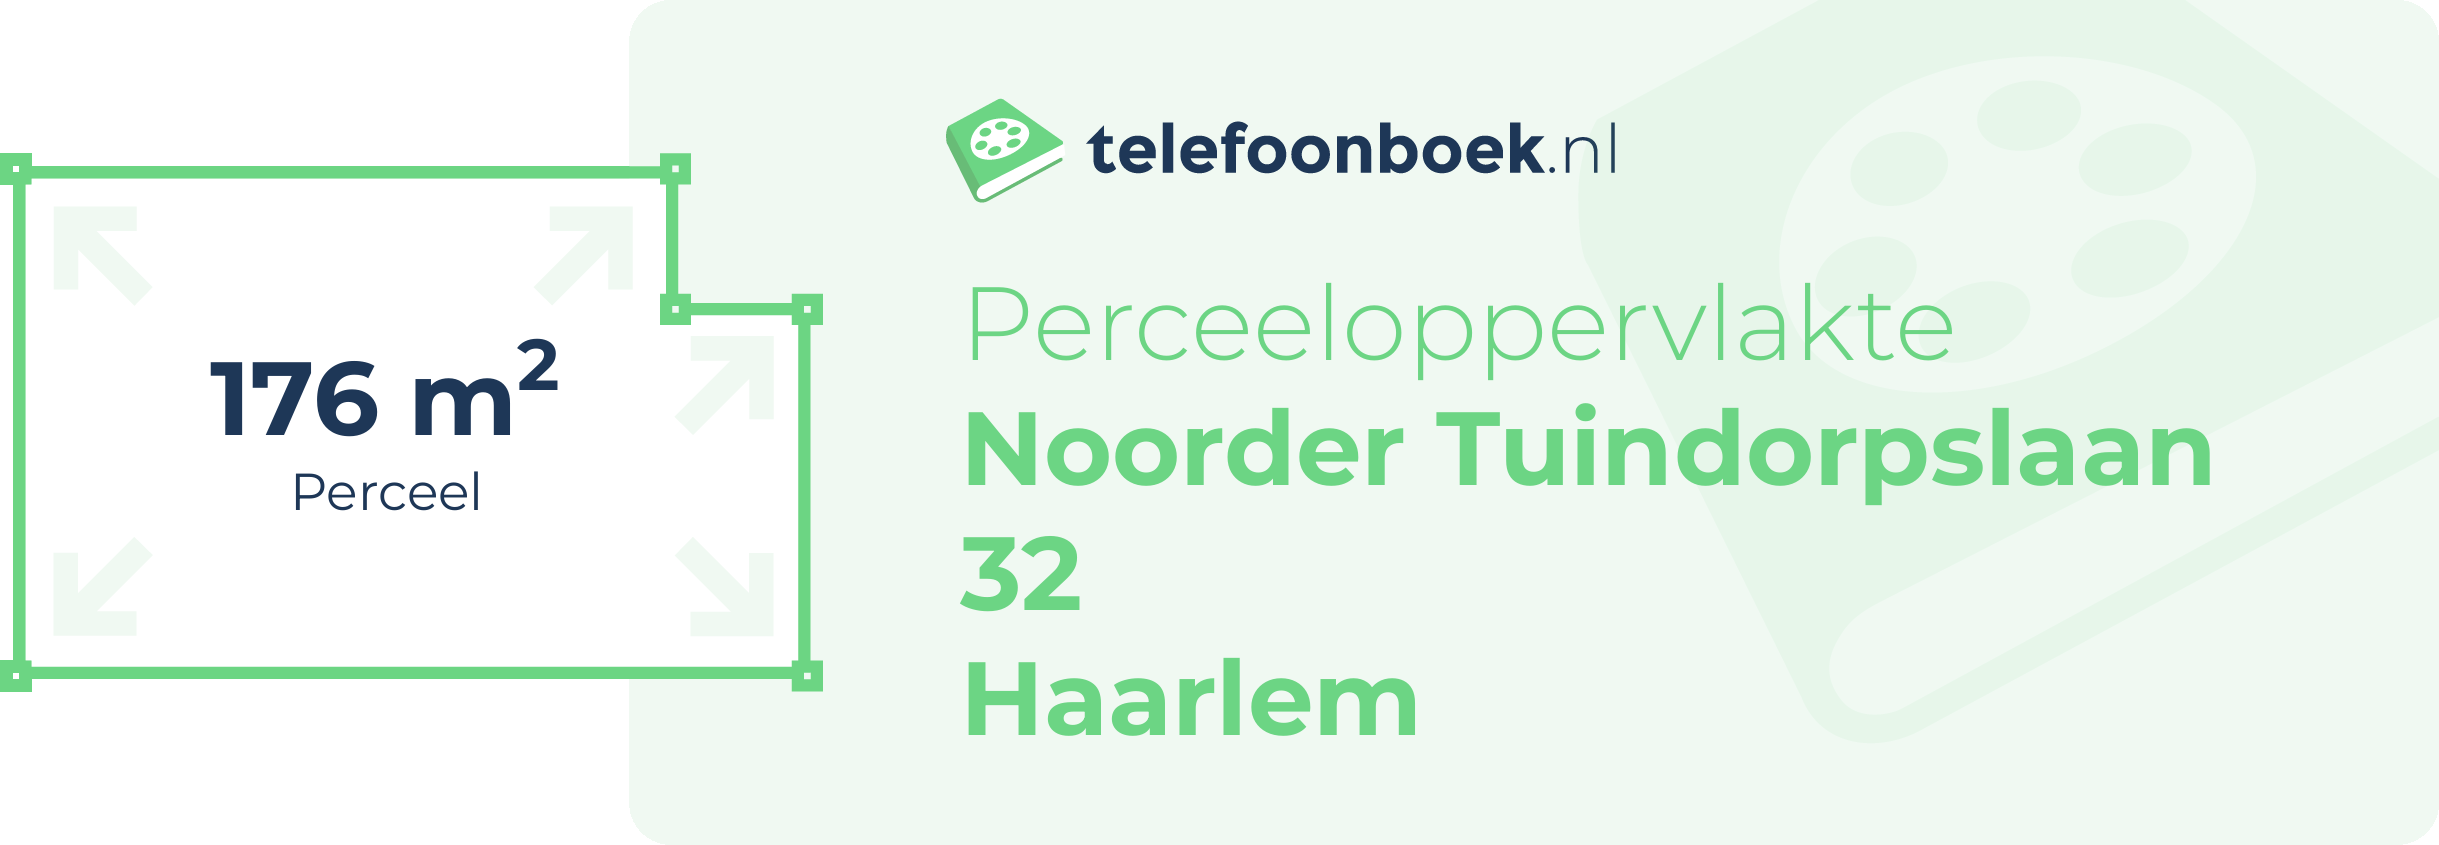 Perceeloppervlakte Noorder Tuindorpslaan 32 Haarlem